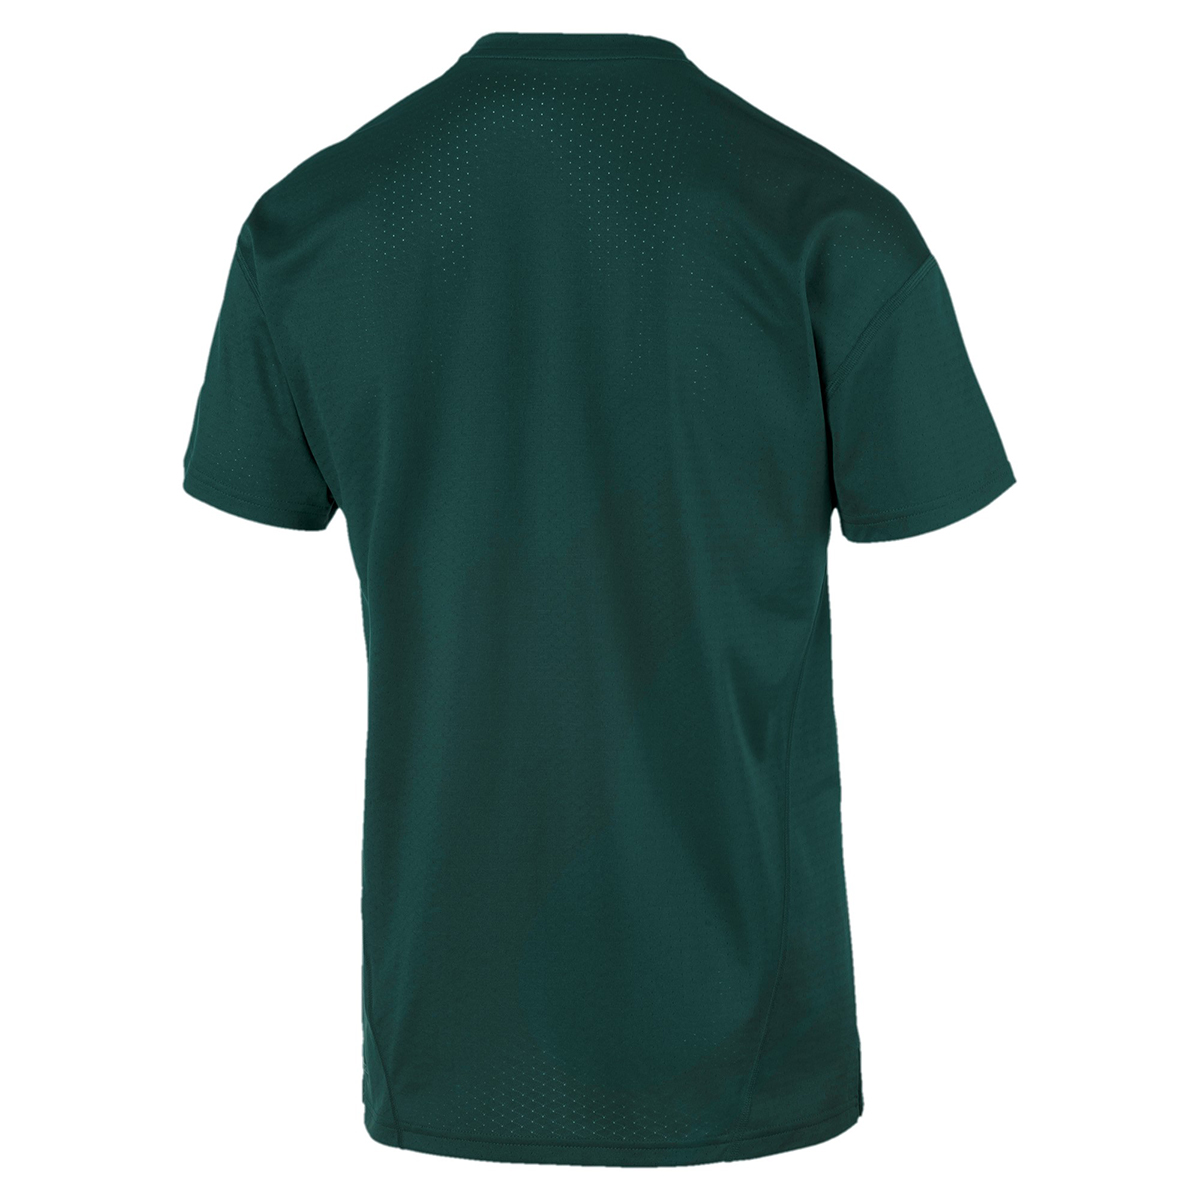 PUMA Herren A.C.E. SS Tee T-Shirt DryCELL grün 516648